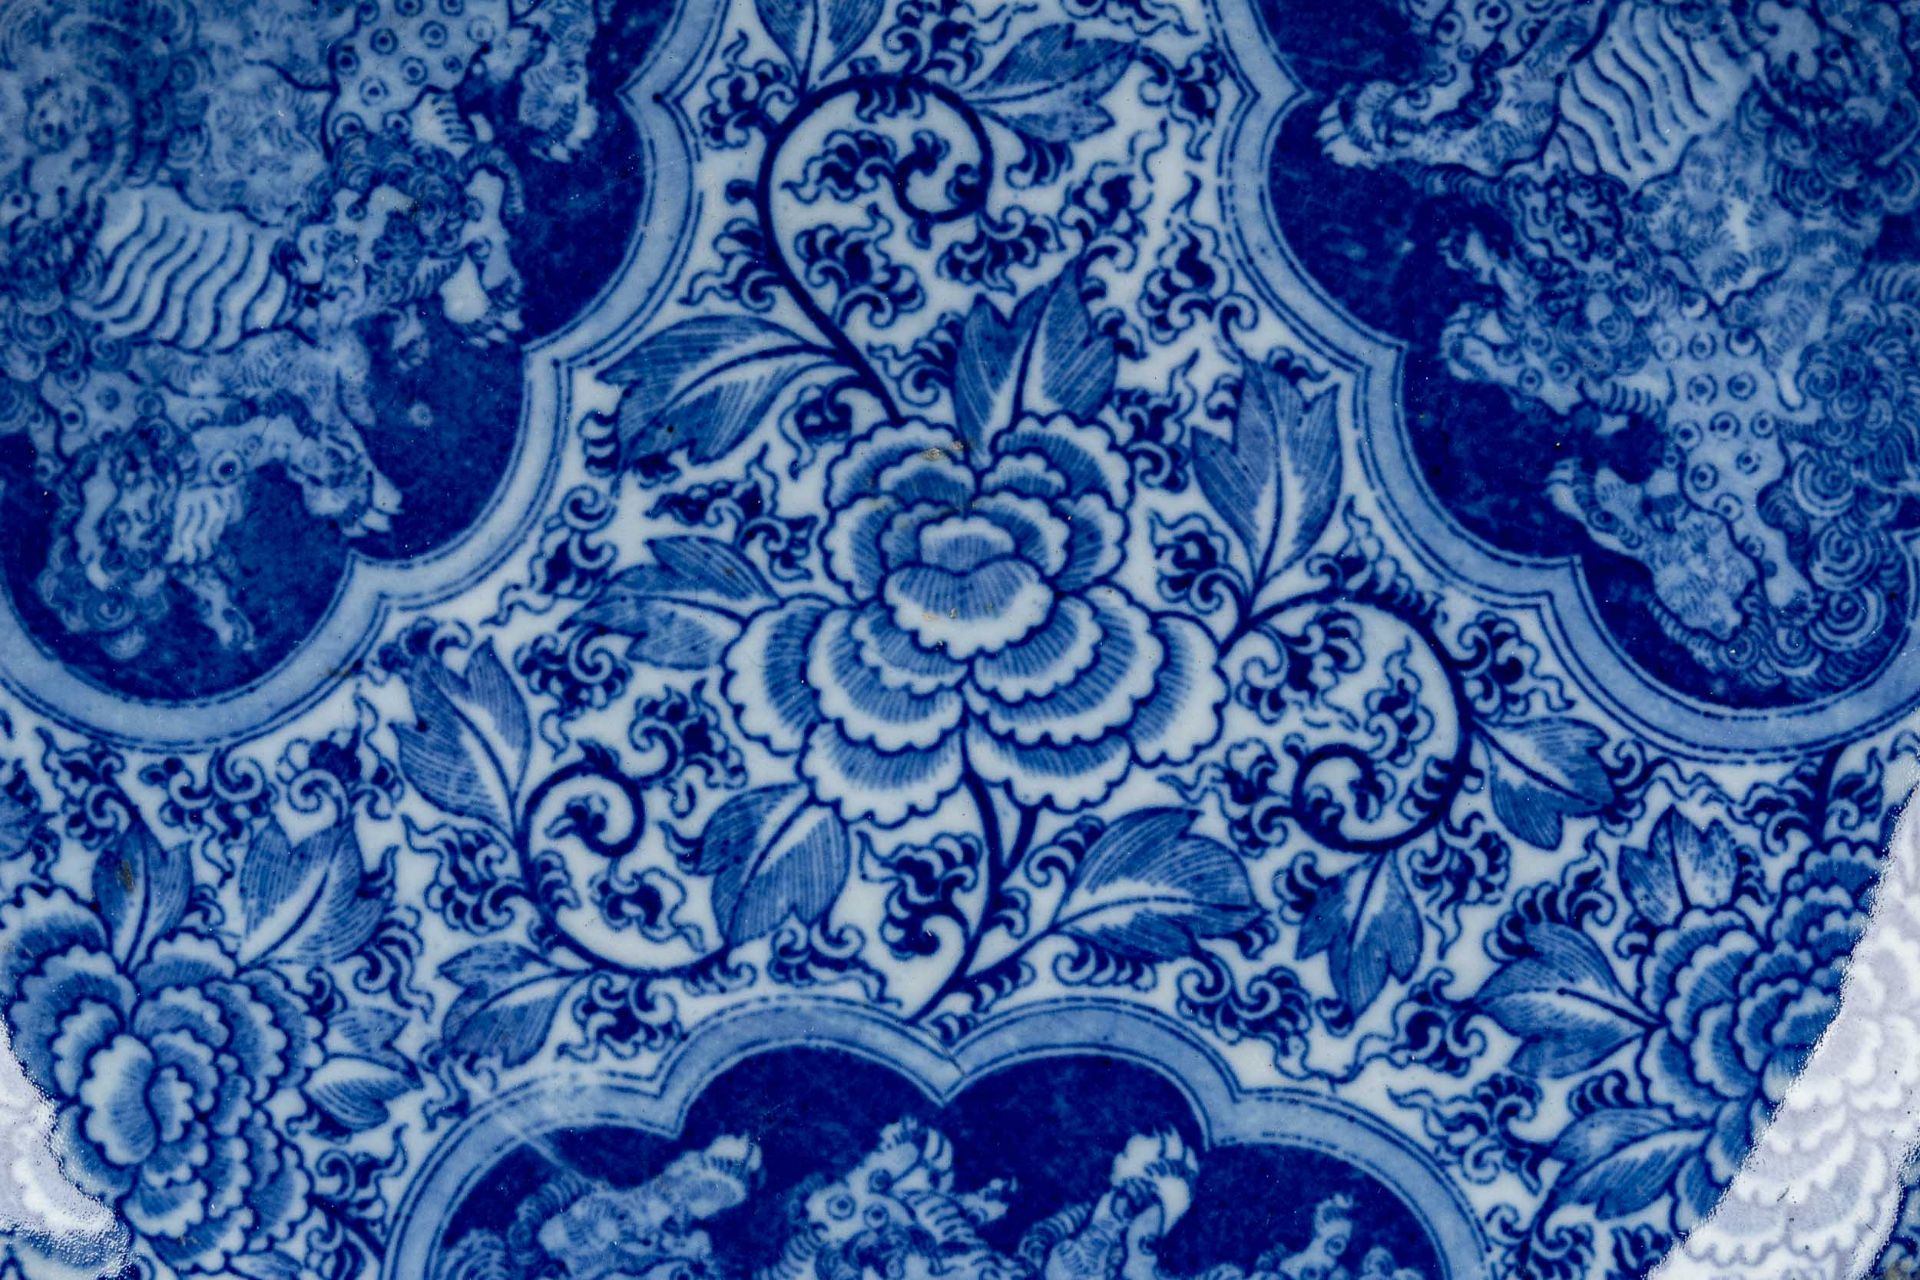 Großer runder Schauteller, China 20. Jhdt., Blaudekore, bodenseitig Vier-Zeichen-Marke in Blau; unb - Bild 2 aus 4